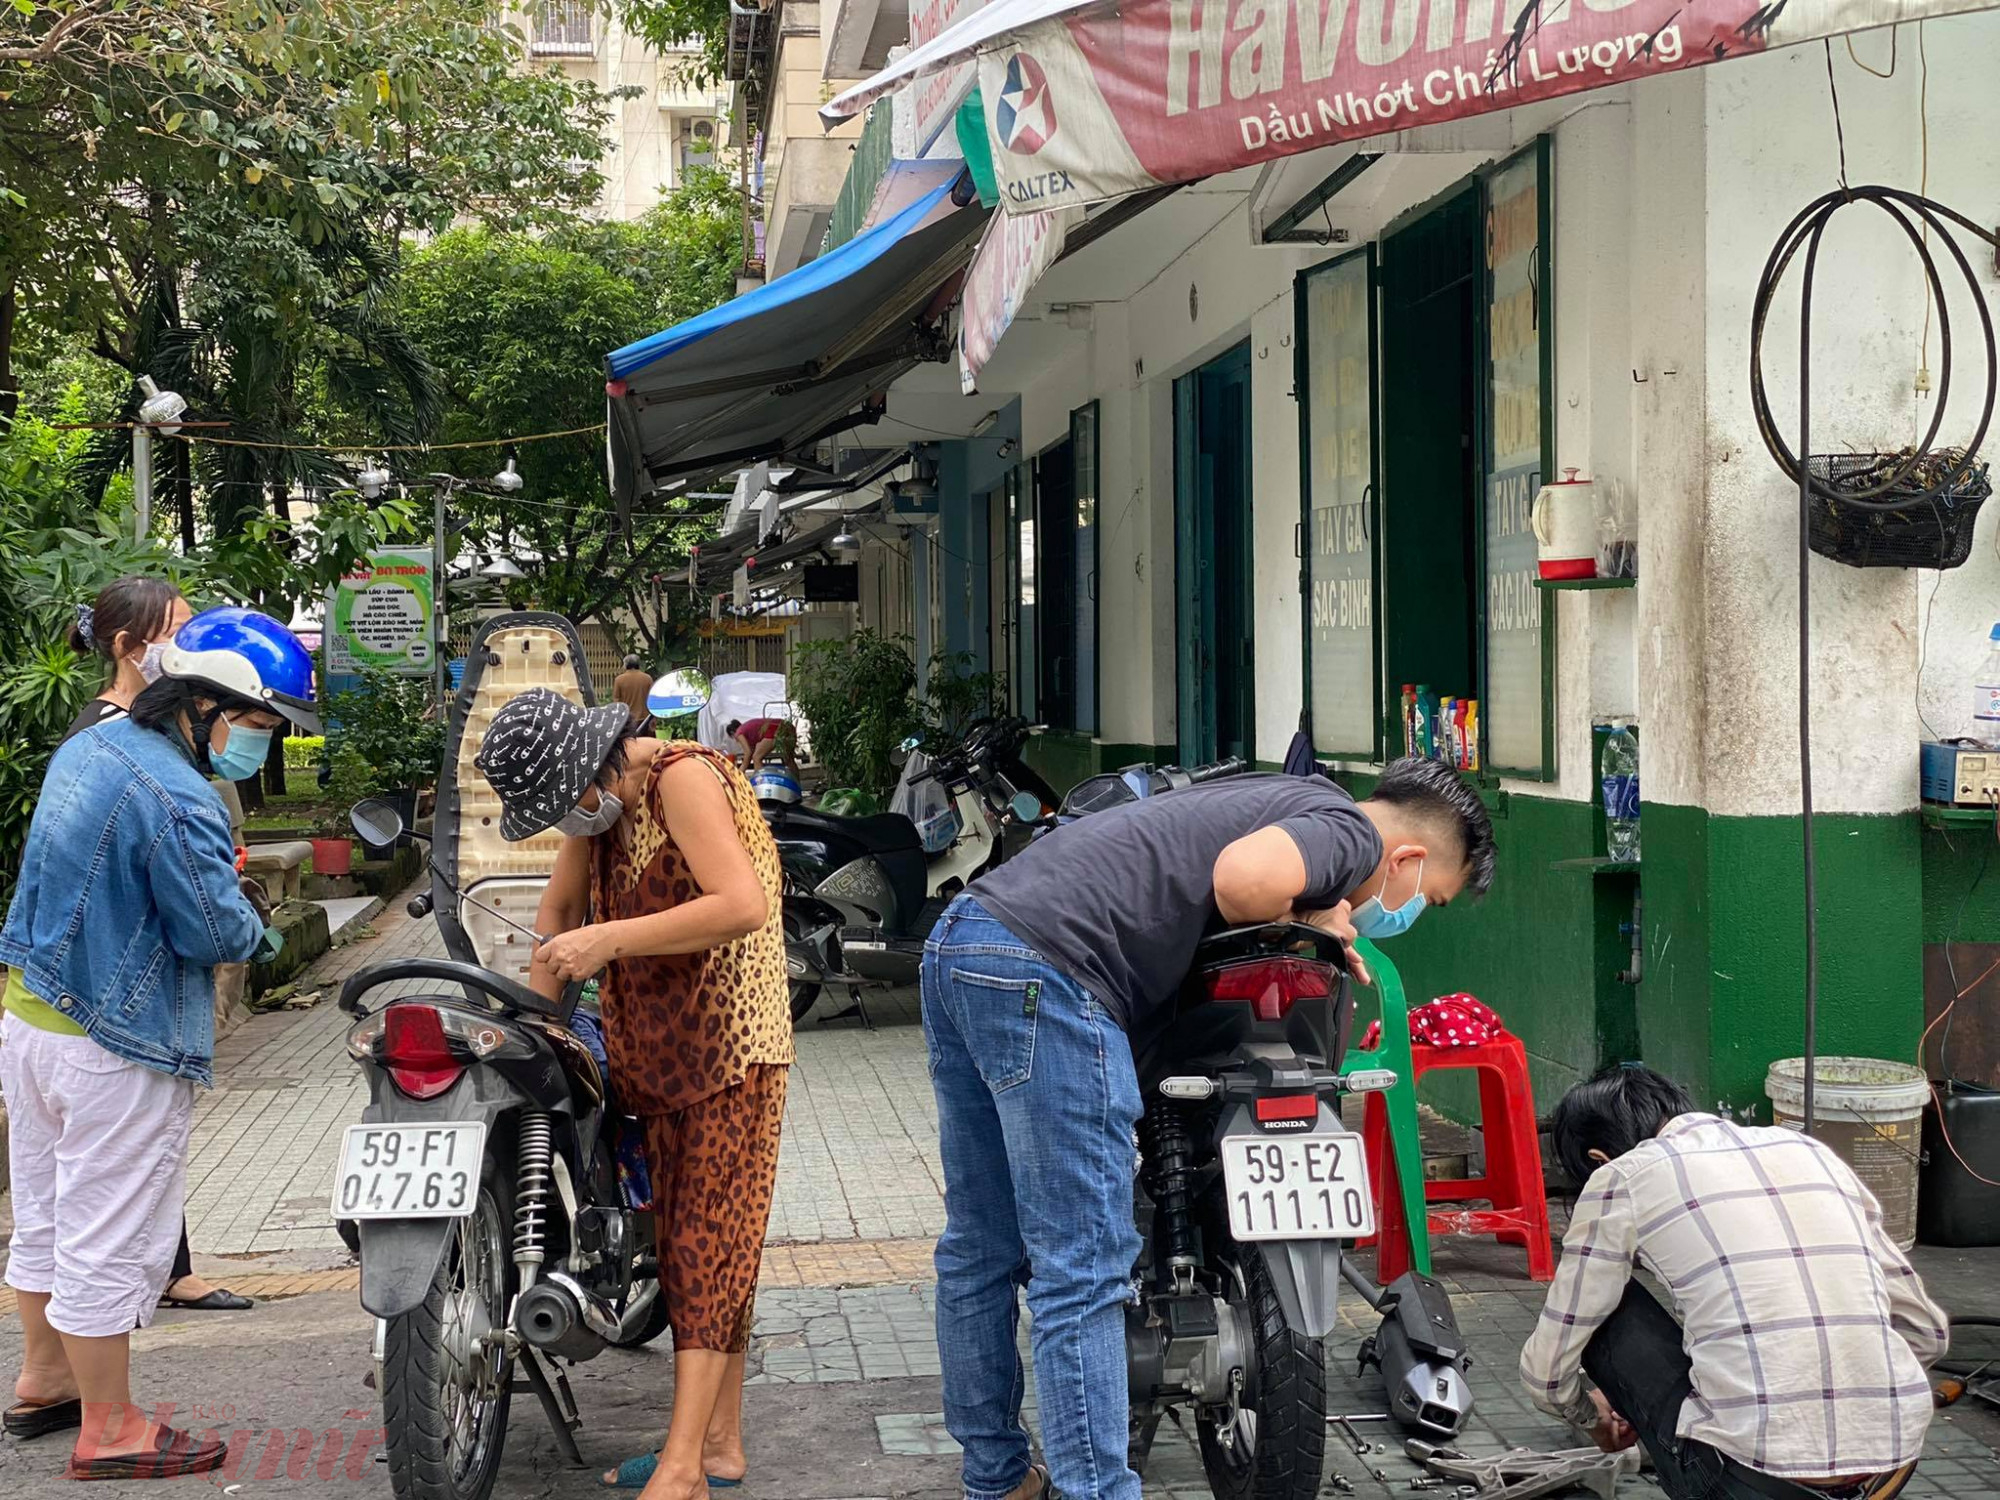 Tiệm sửa xe trên đường Phan Xích Long (quận Phú Nhuận) cũng khá đông khách kiểm tra bình ắc-quy, thay nhớt, bơm bánh xe,… vì lâu ngày không chạy.